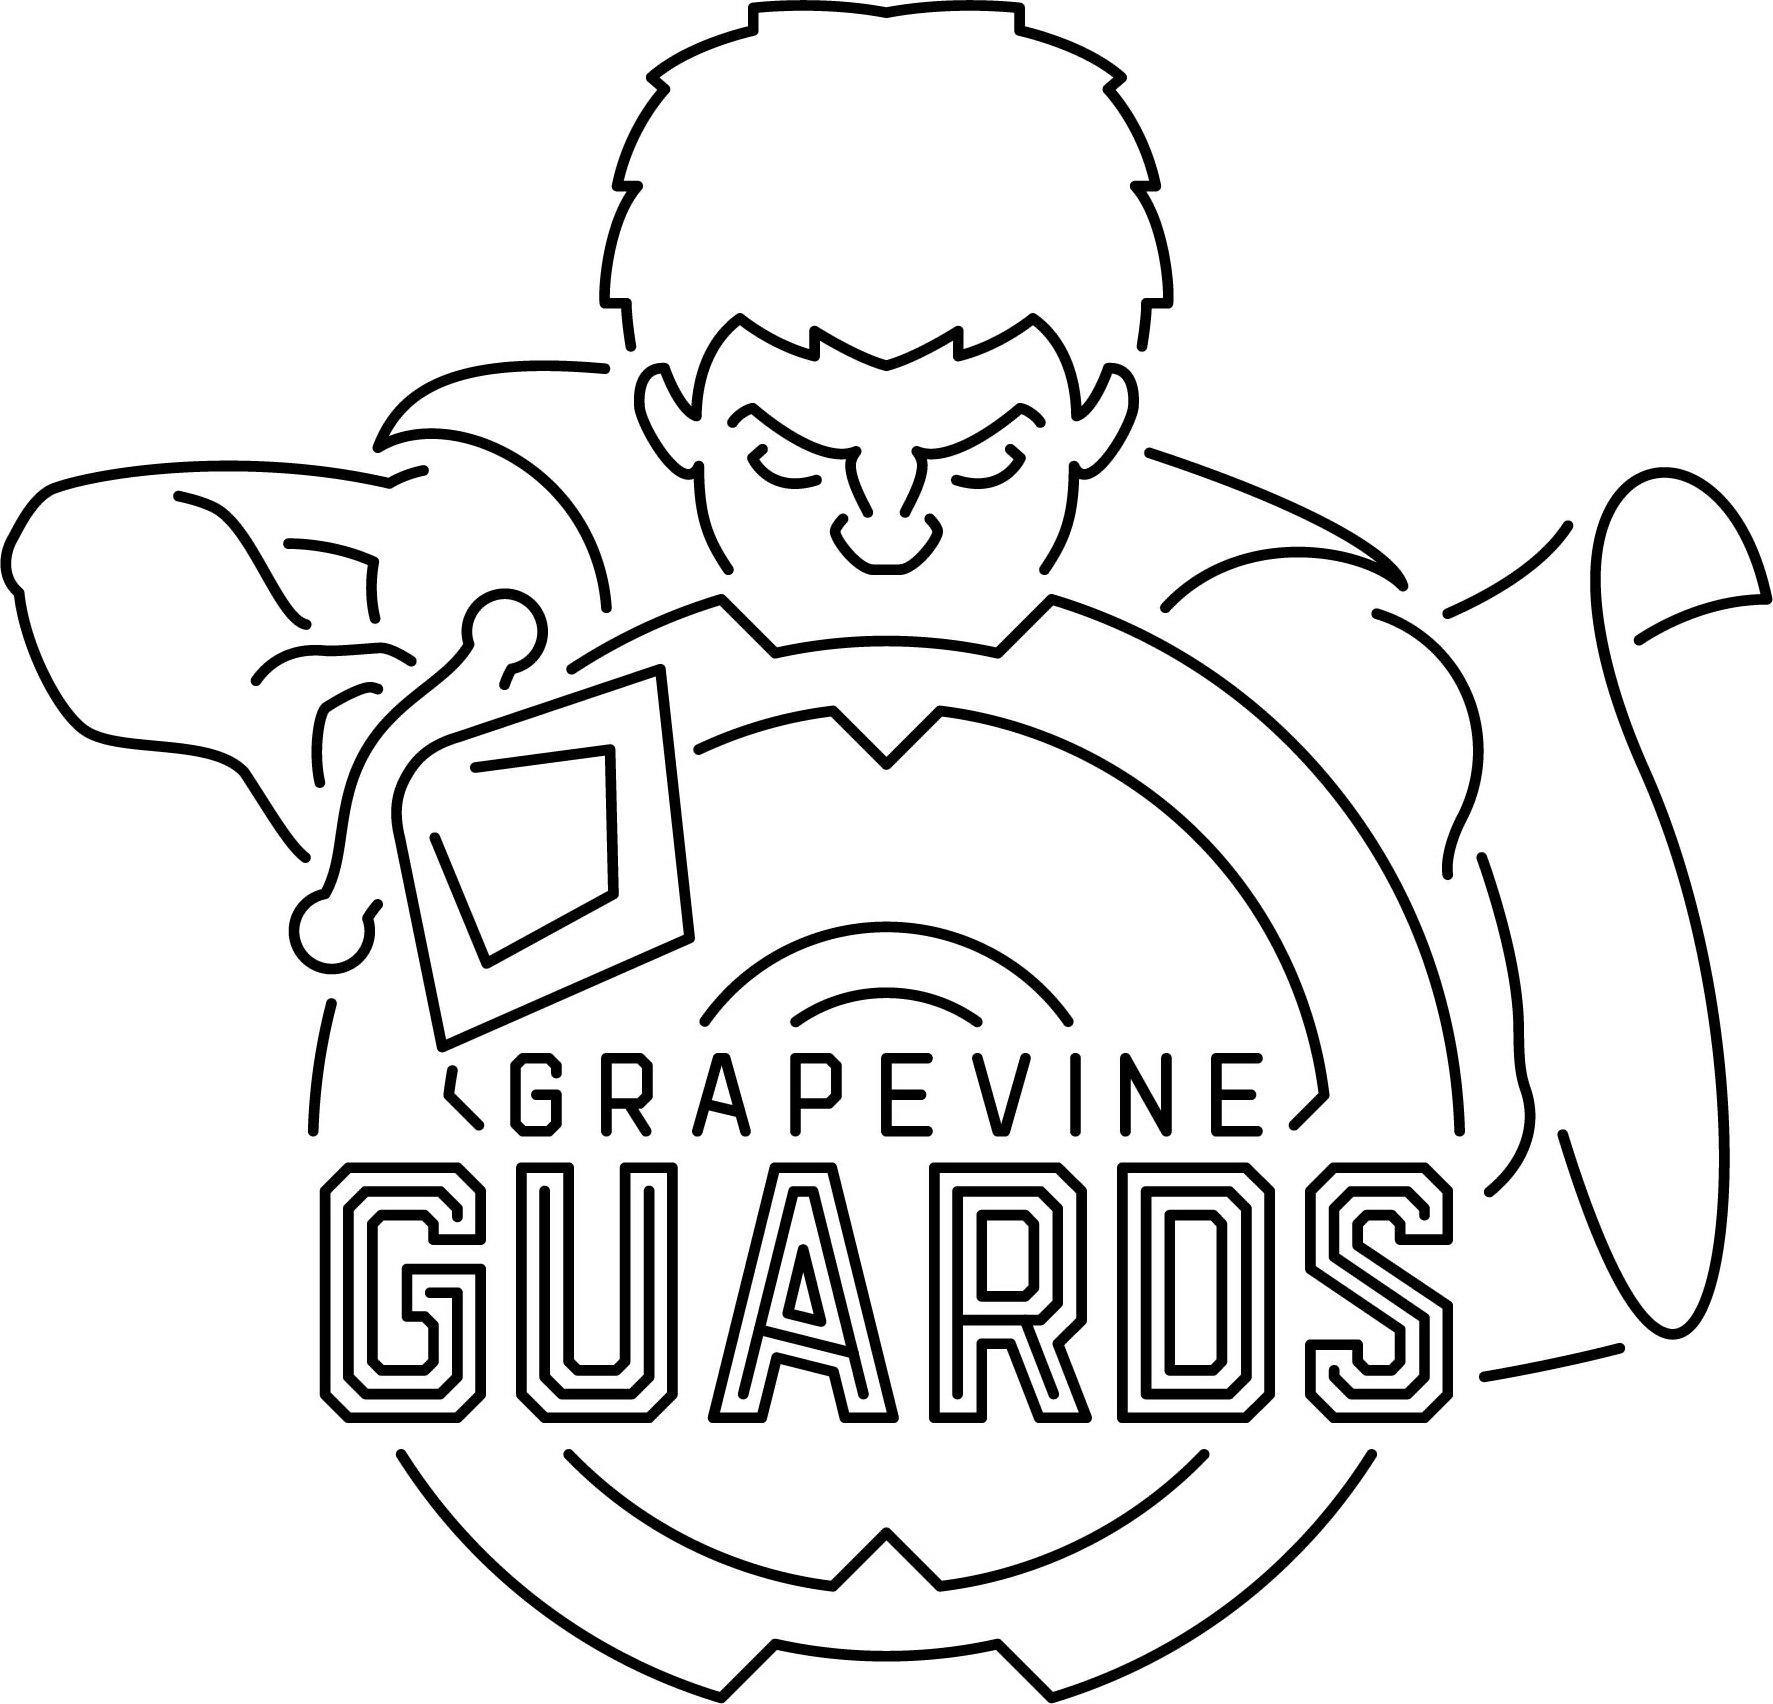  GRAPEVINE GUARDS